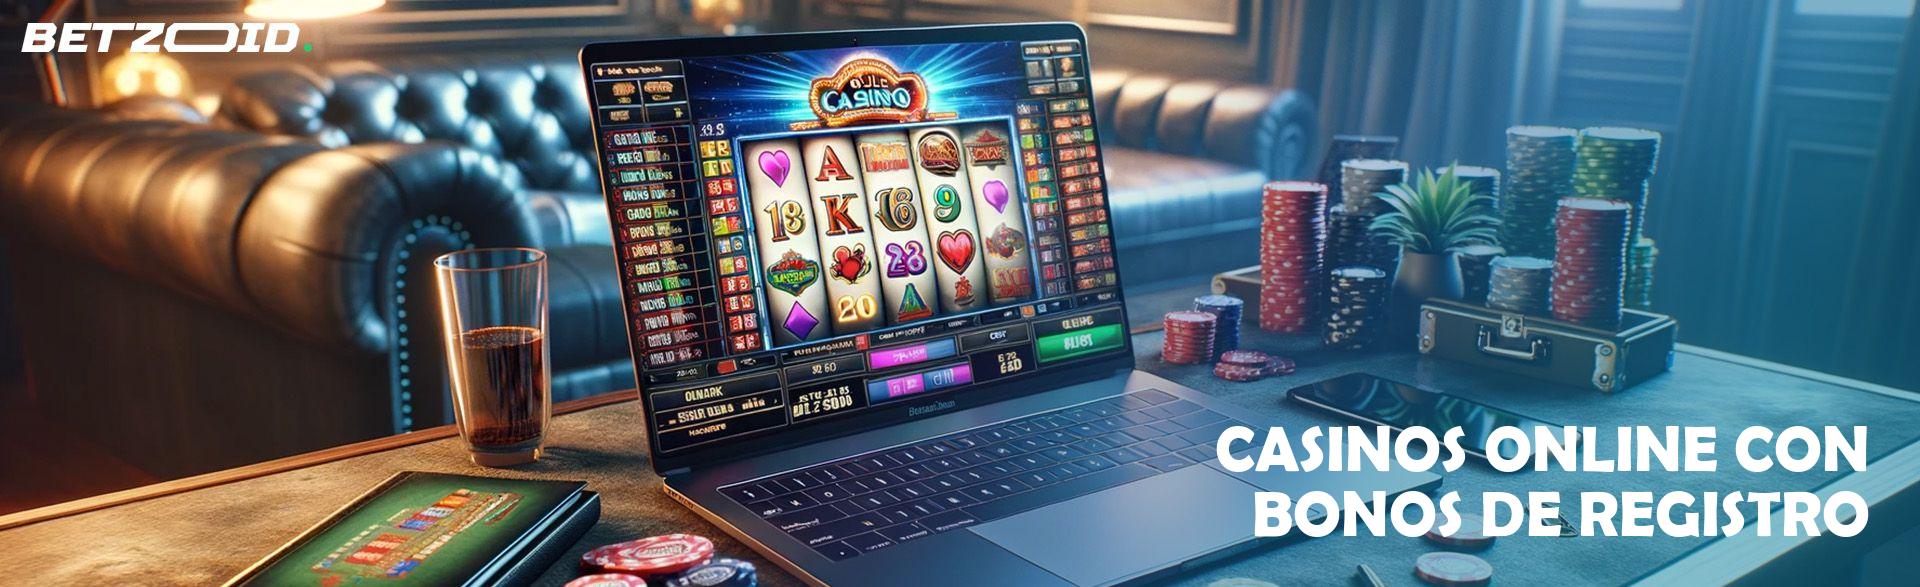 Casinos Online con Bonos de Registro.